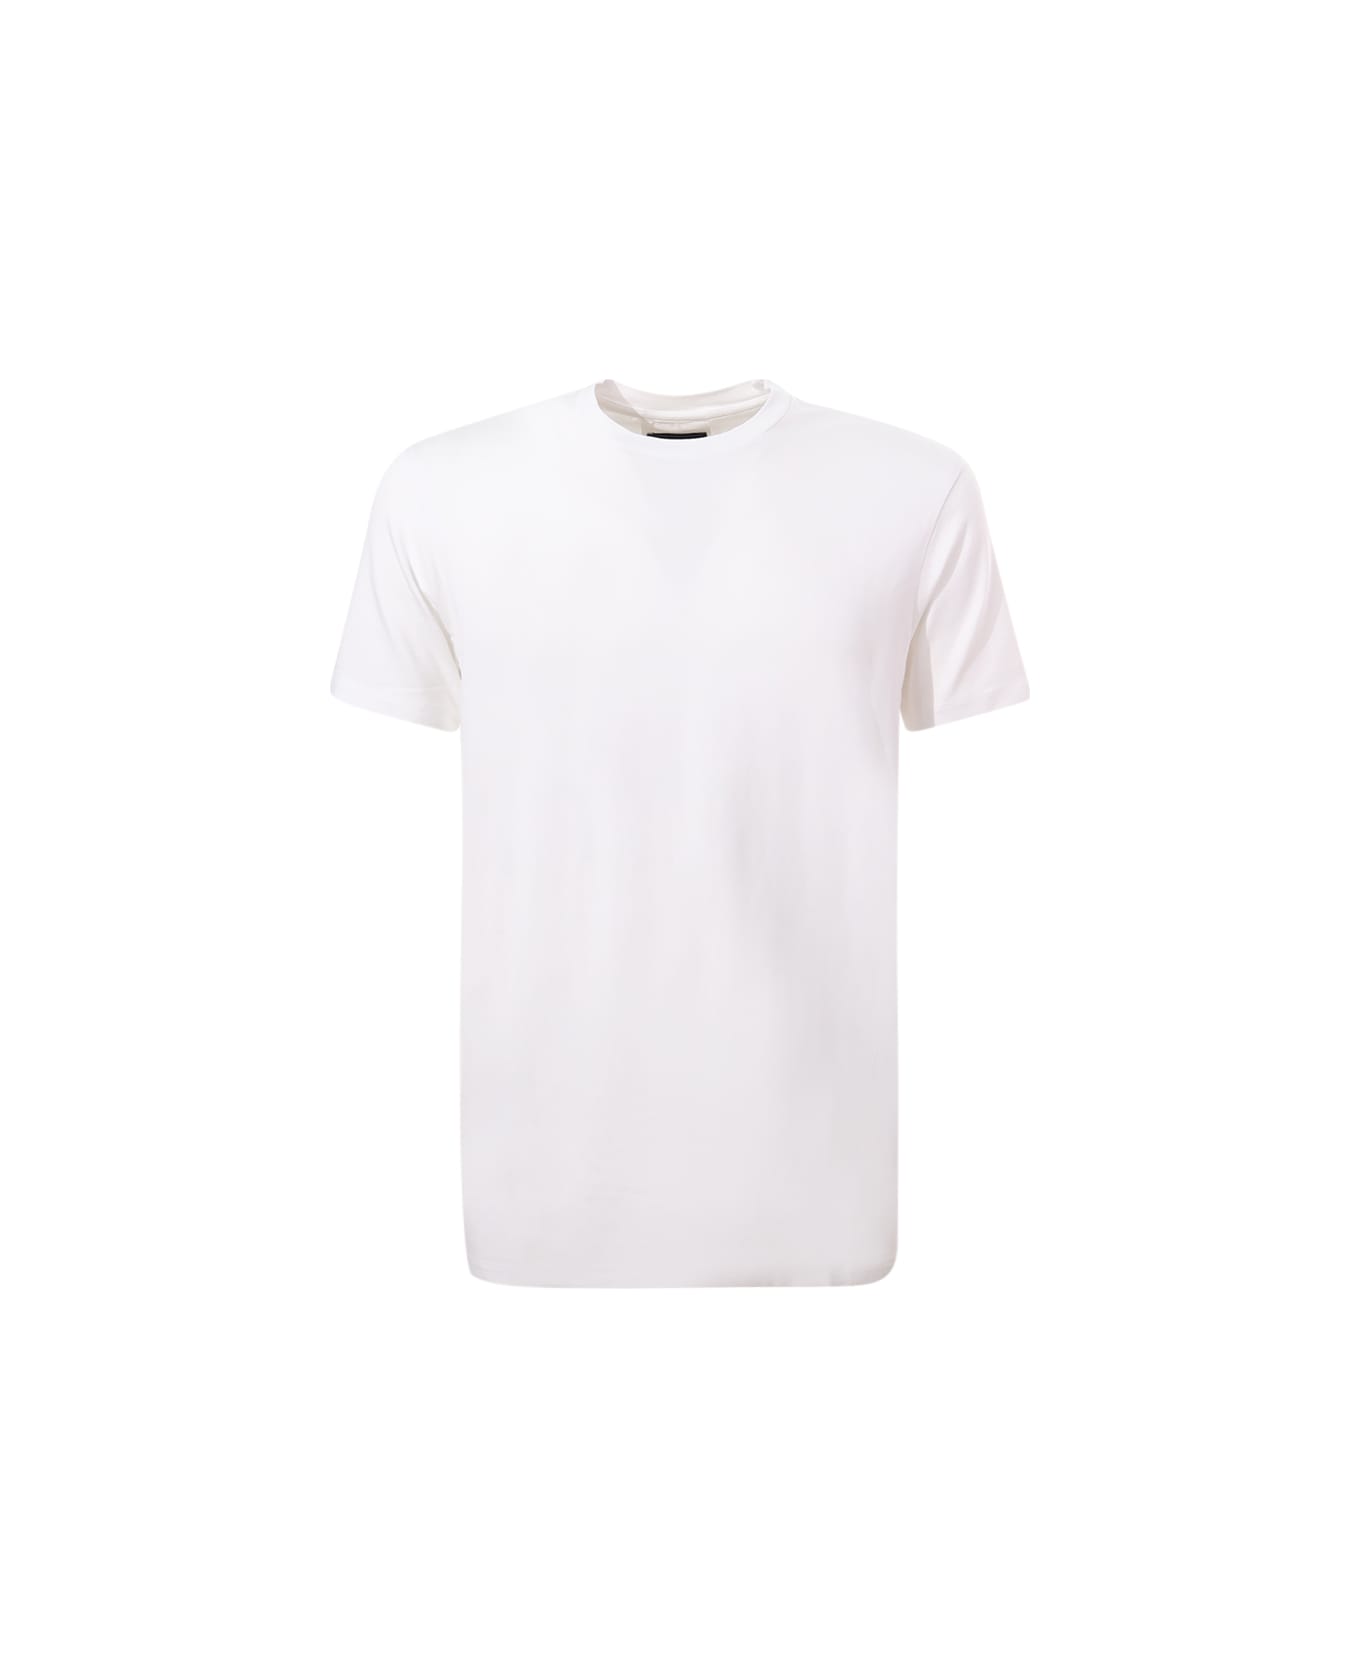 Emporio Armani T-shirt Emporio Armani - White シャツ